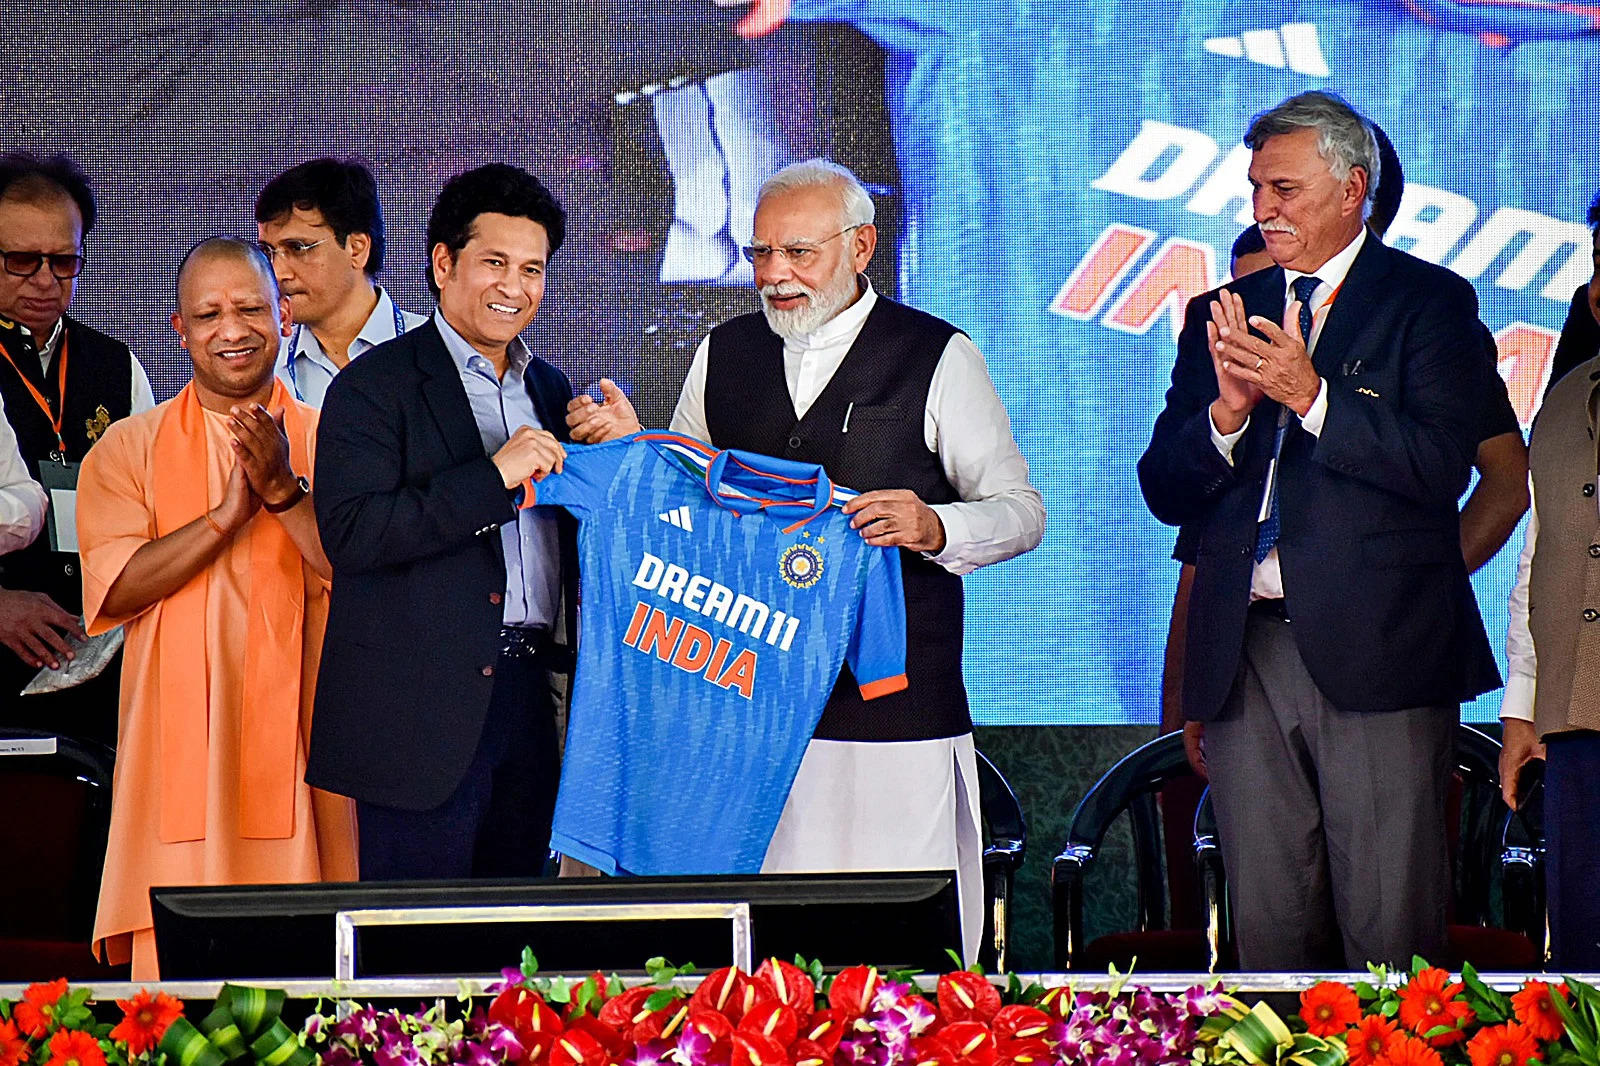 प्रधान मंत्री नरेंद्र मोदी ने उत्तर प्रदेश के  मुख्यमंत्री योगी आदित्यनाथ और क्रिकेट जगत की कई प्रमुख हस्तियों के साथ उत्तर प्रदेश के वाराणसी के गांजरी में अंतर्राष्ट्रीय क्रिकेट स्टेडियम के निर्माण का उद्घाटन किया। विशिष्ट अतिथियों में कपिल देव, सुनील गावस्कर, सचिन तेंदुलकर, रवि शास्त्री, दिलीप वेंगसरकर जैसे पूर्व क्रिकेट दिग्गजों के साथ-साथ BCCI अध्यक्ष रोजर बिन्नी और BCCI सचिव जय शाह भी शामिल थे।